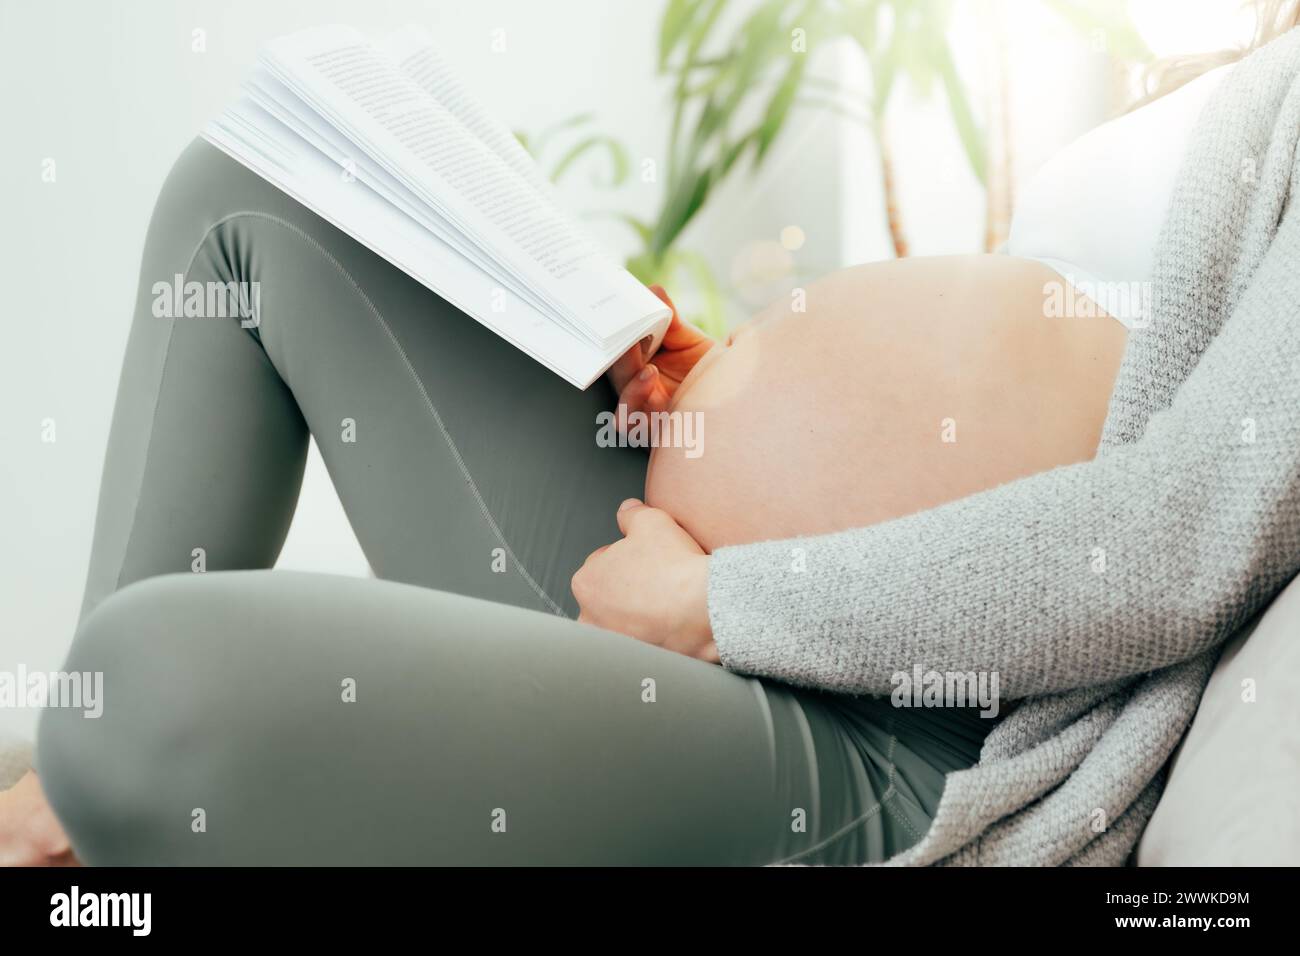 Description : vue de côté de la femme dans les derniers mois de grossesse tenant doucement son ventre tout en lisant un livre. Grossesse troisième trimestre - semaine 34 Banque D'Images